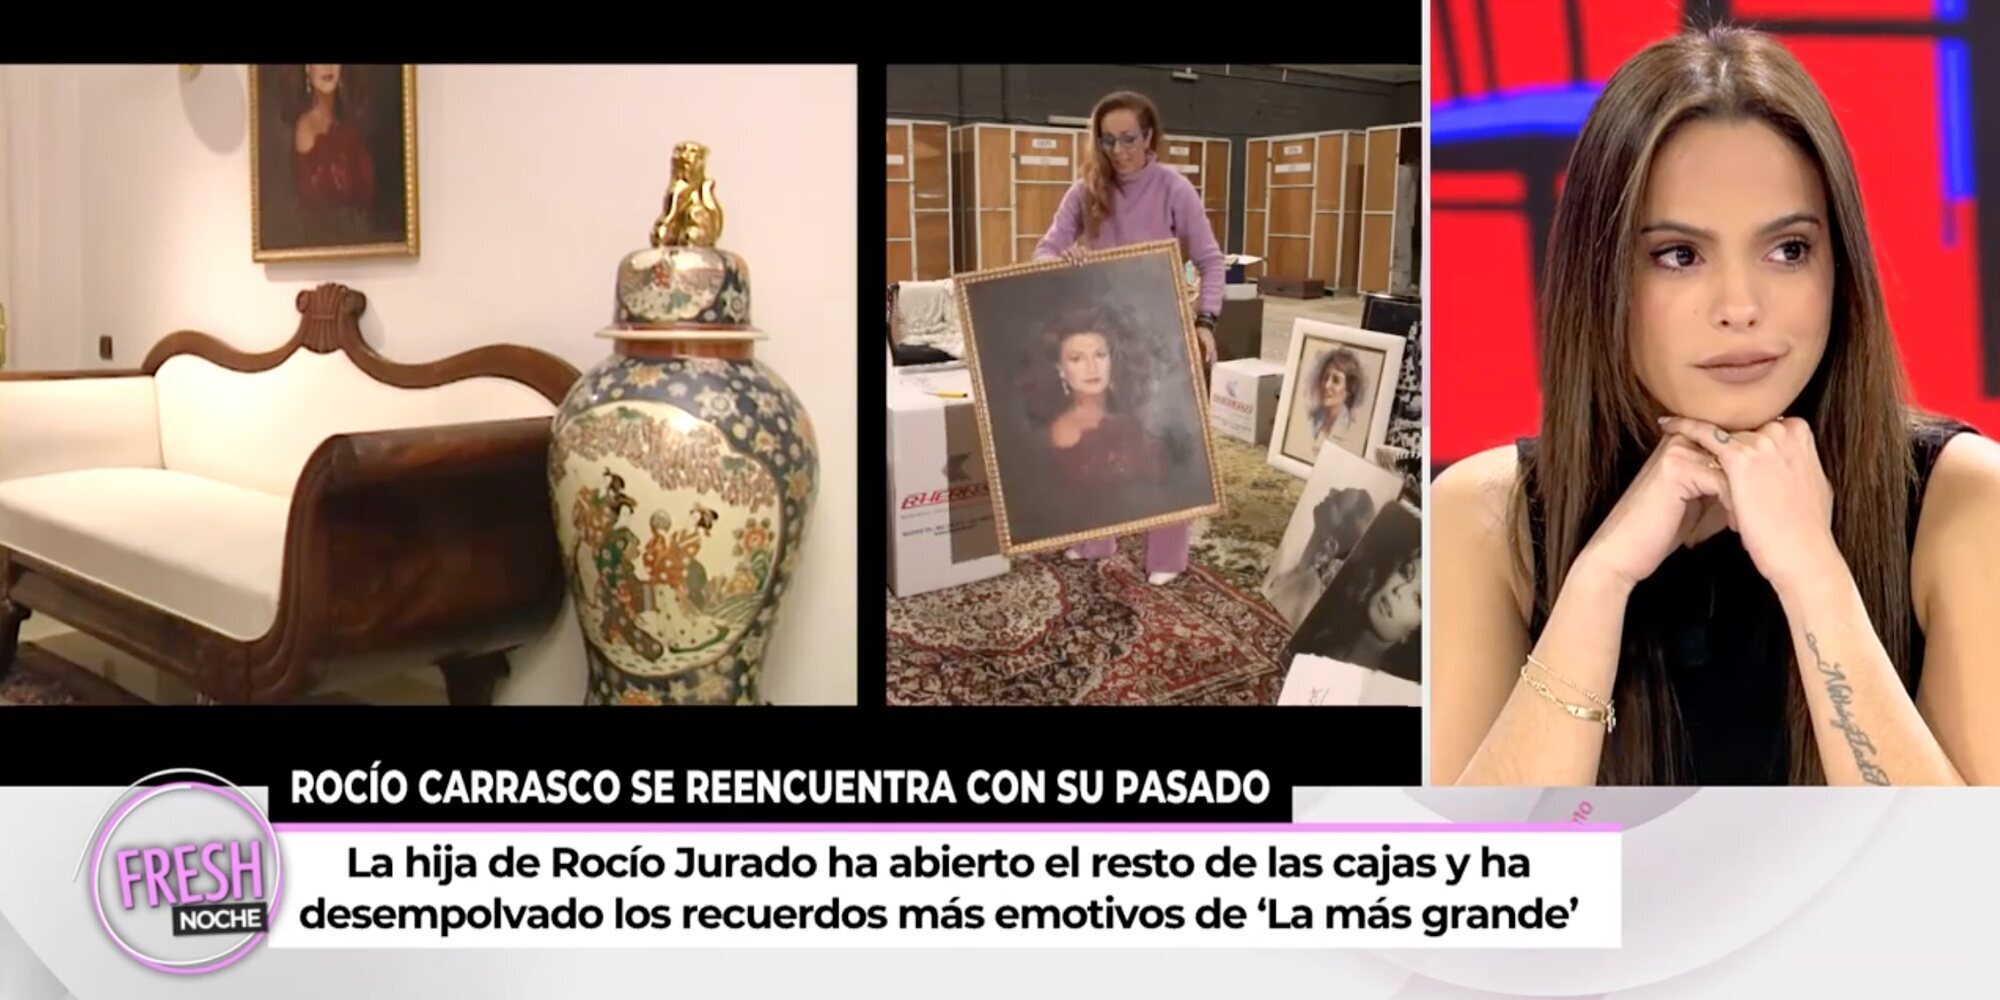 Gloria Camila tiende la mano a Rocío Carrasco tras la apertura de las cajas de Rocío Jurado: "Si quiere, que me llame"